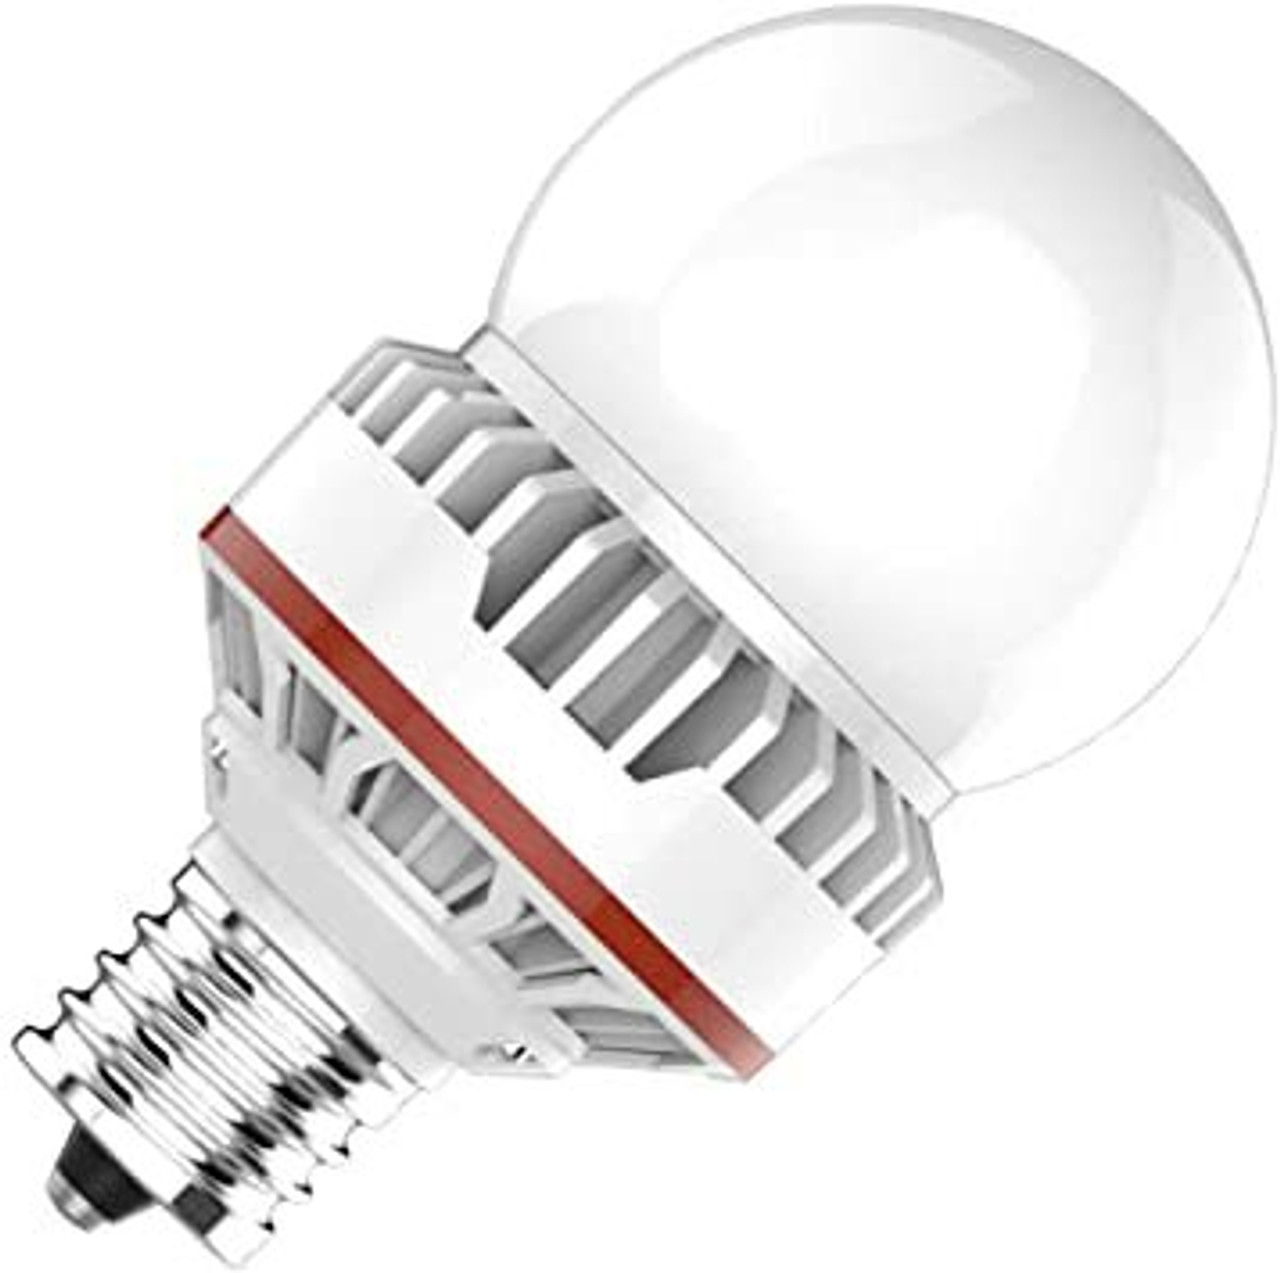 A25 Light Bulbs